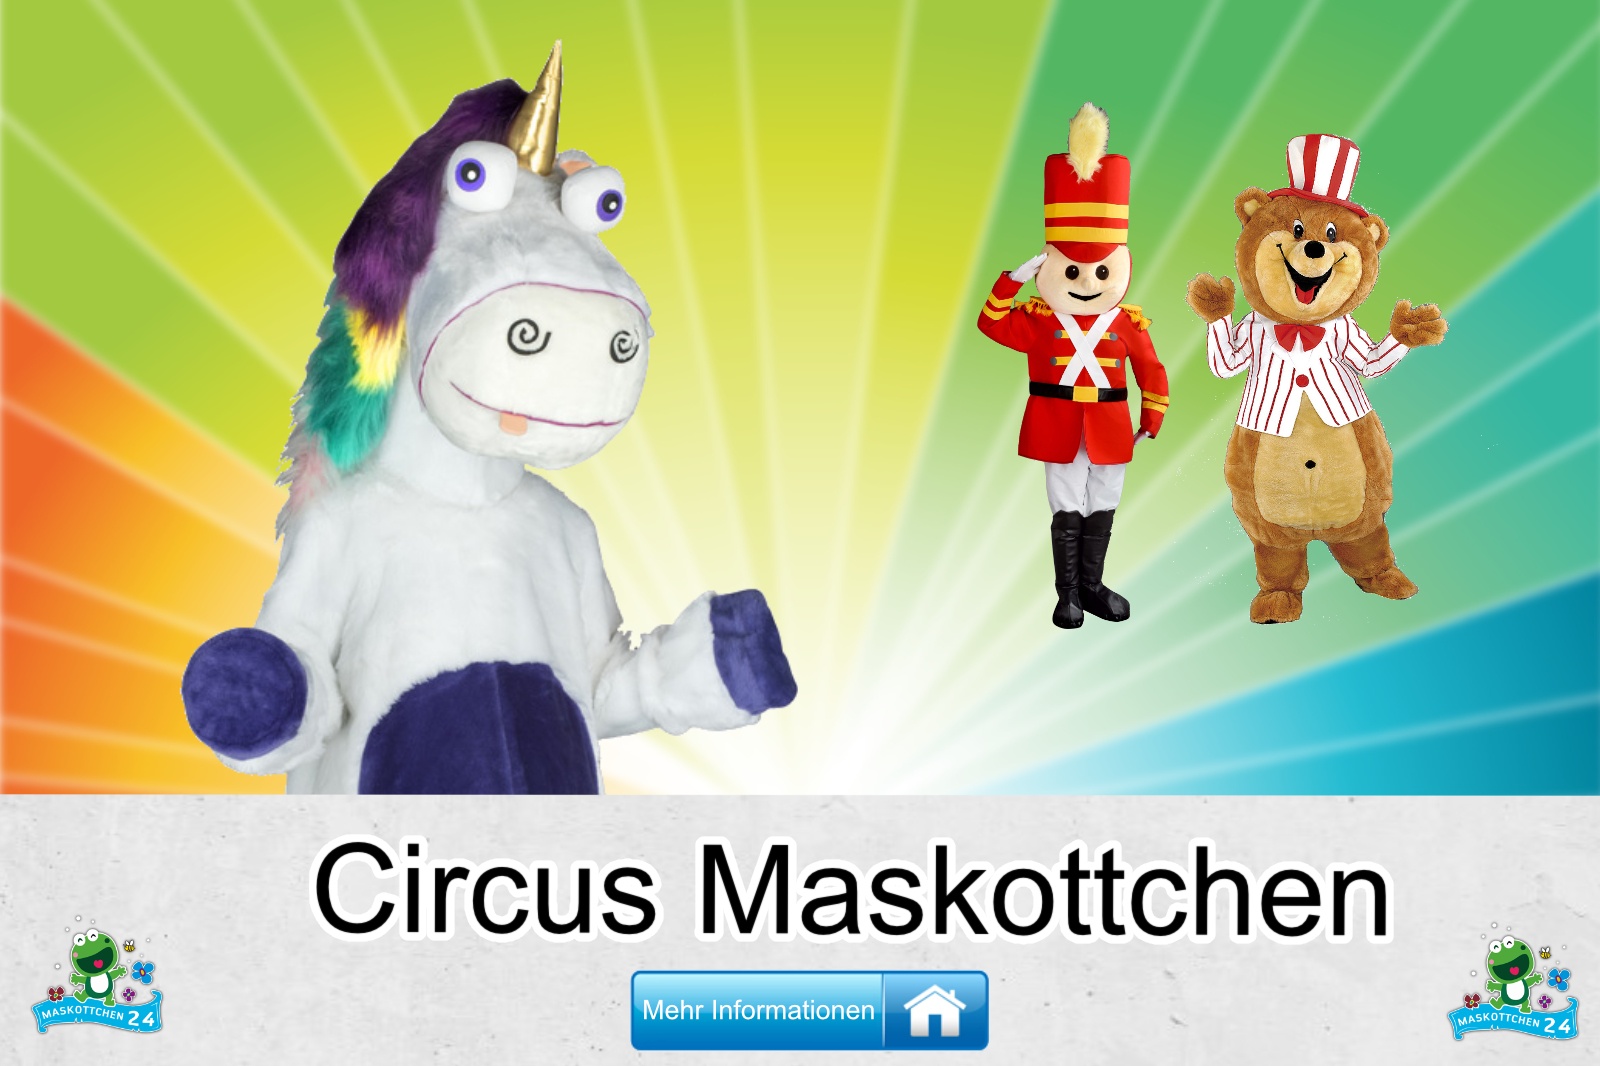 Circus Kostüm kaufen, günstige Produktion / Herstellung